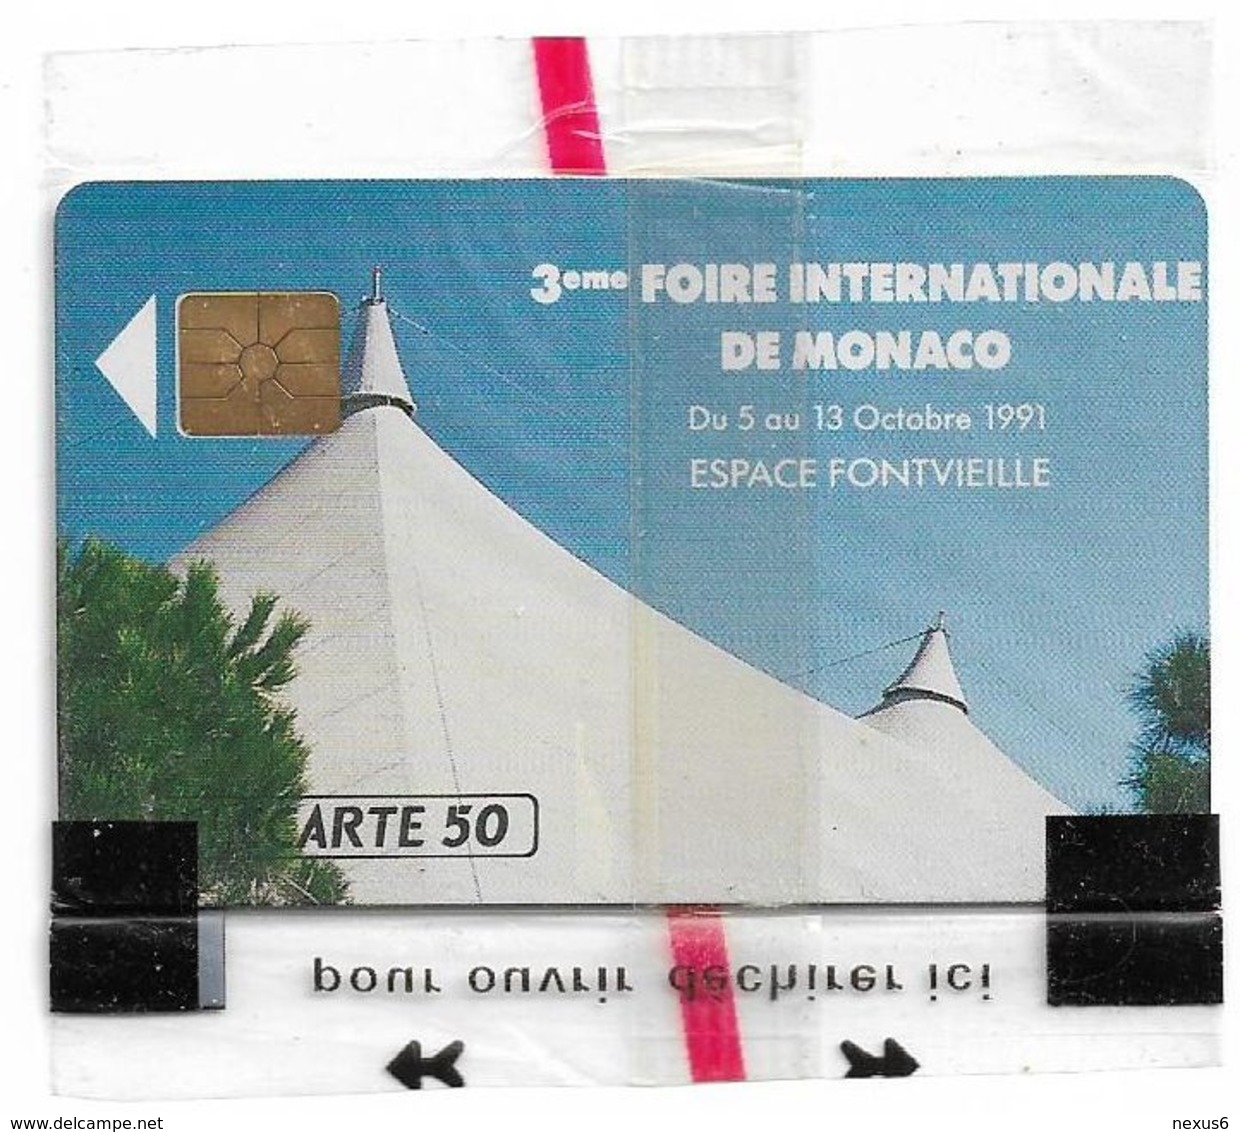 Monaco - MF18 - Ficomias Monte-Carlo - Gem1A Symmetr. Black, 09.1991, 50Units, 10.000ex, NSB - Monaco